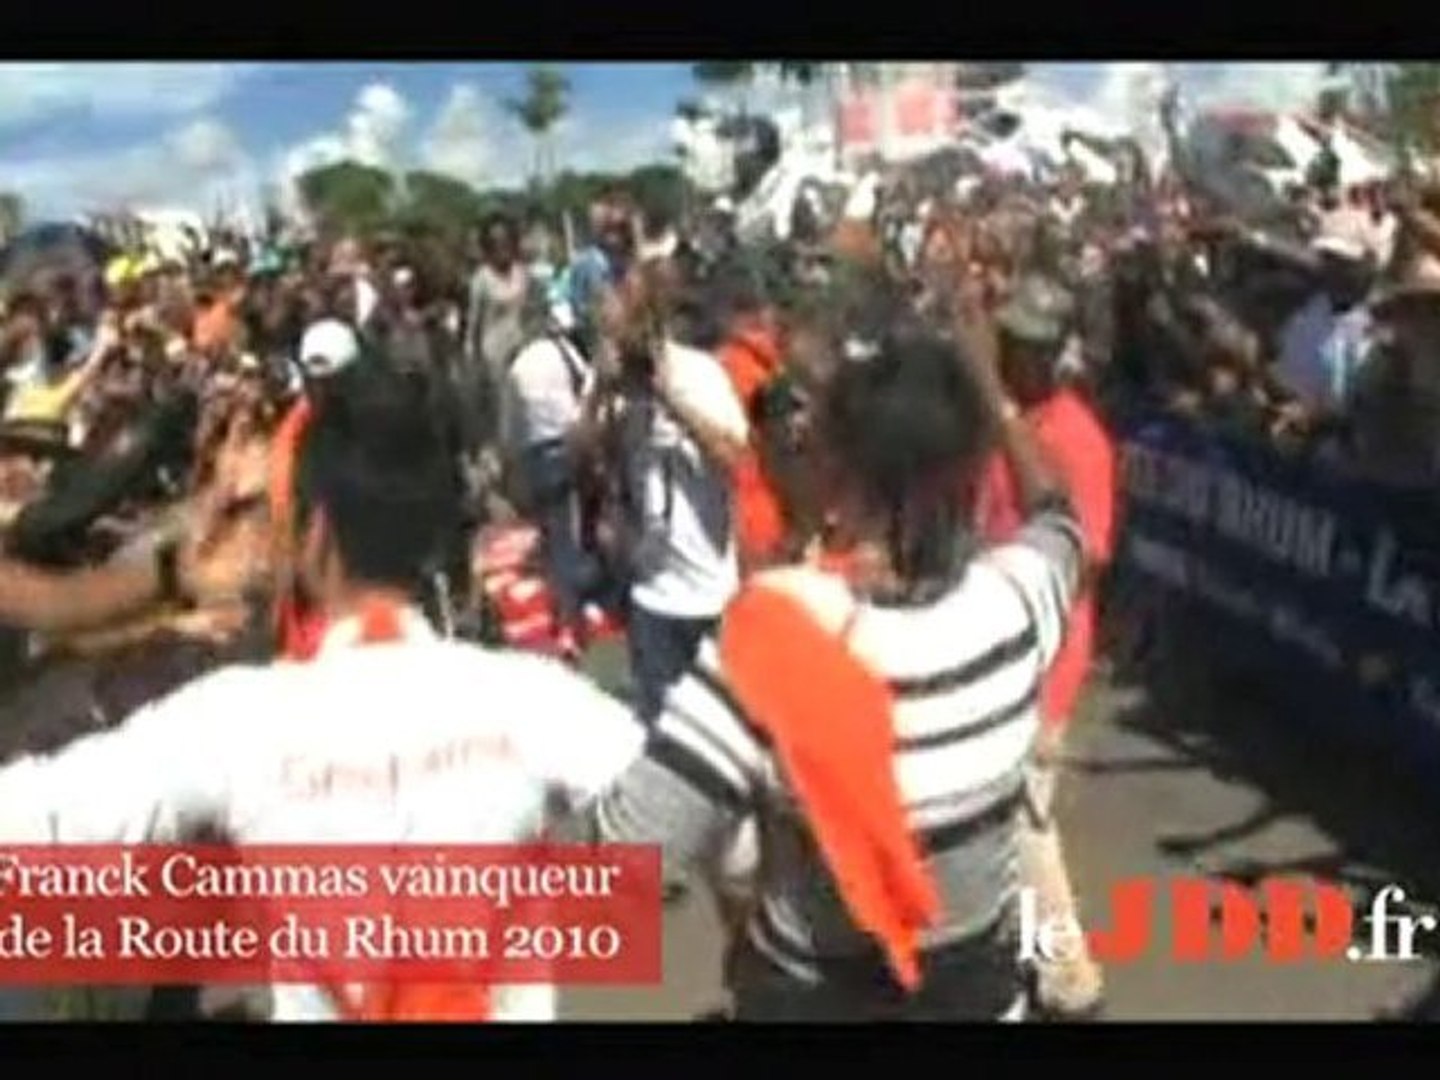 Route du Rhum 2010: l'arrivée de Franck Cammas - Vidéo Dailymotion